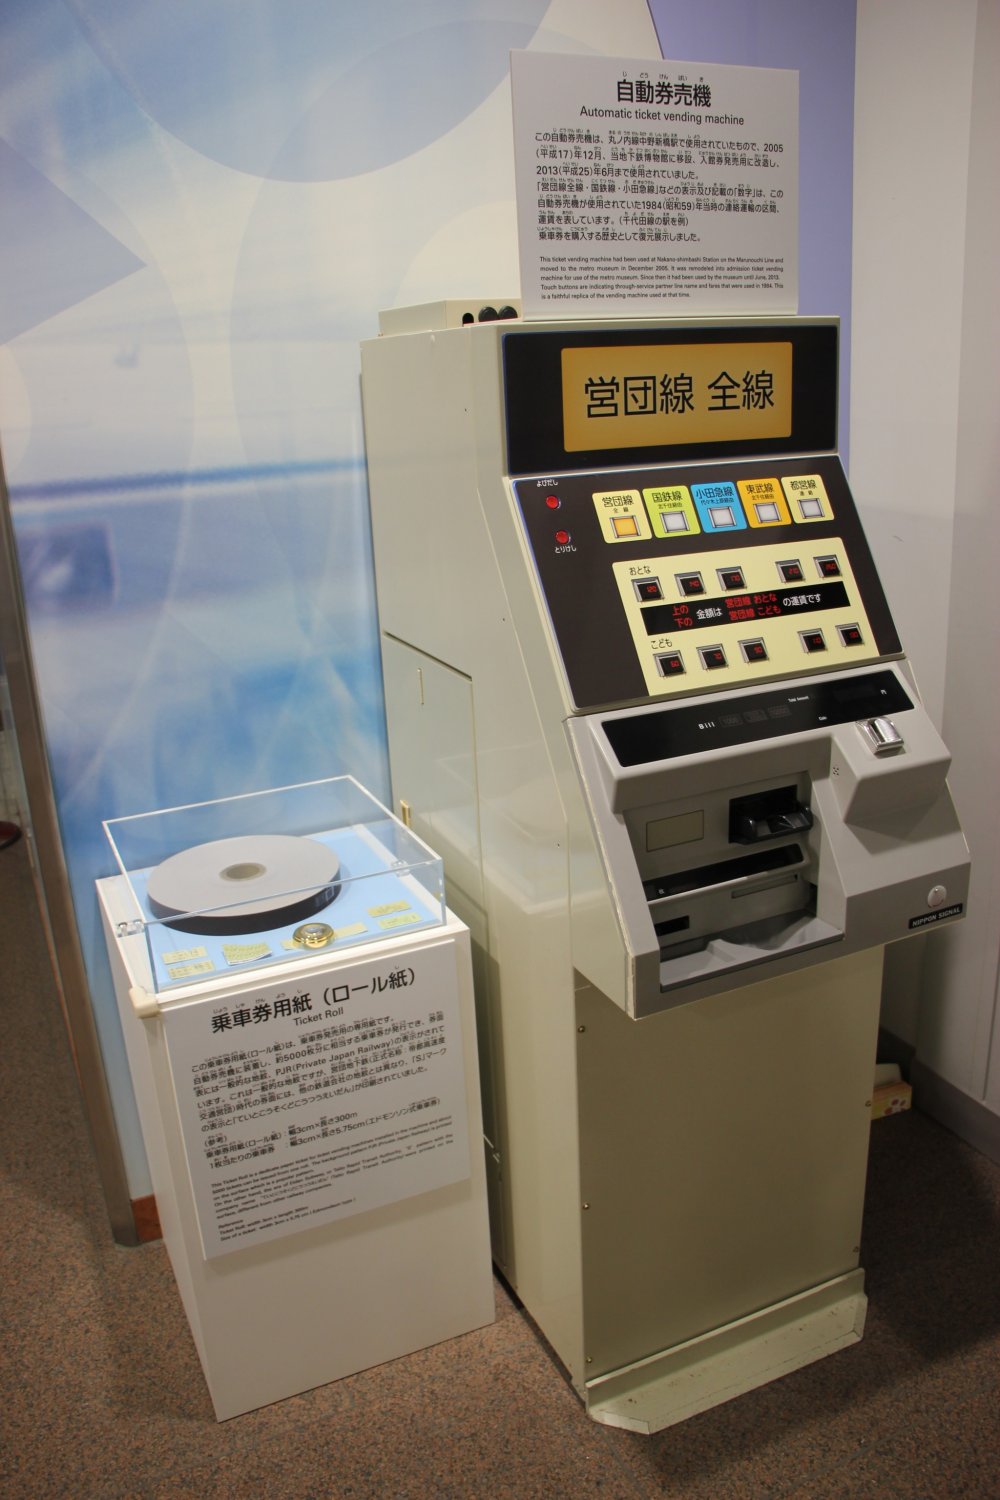 Автомат по продаже входных билетов в музей, переделанный из автомата по продаже билетов в метро образца 1984 года